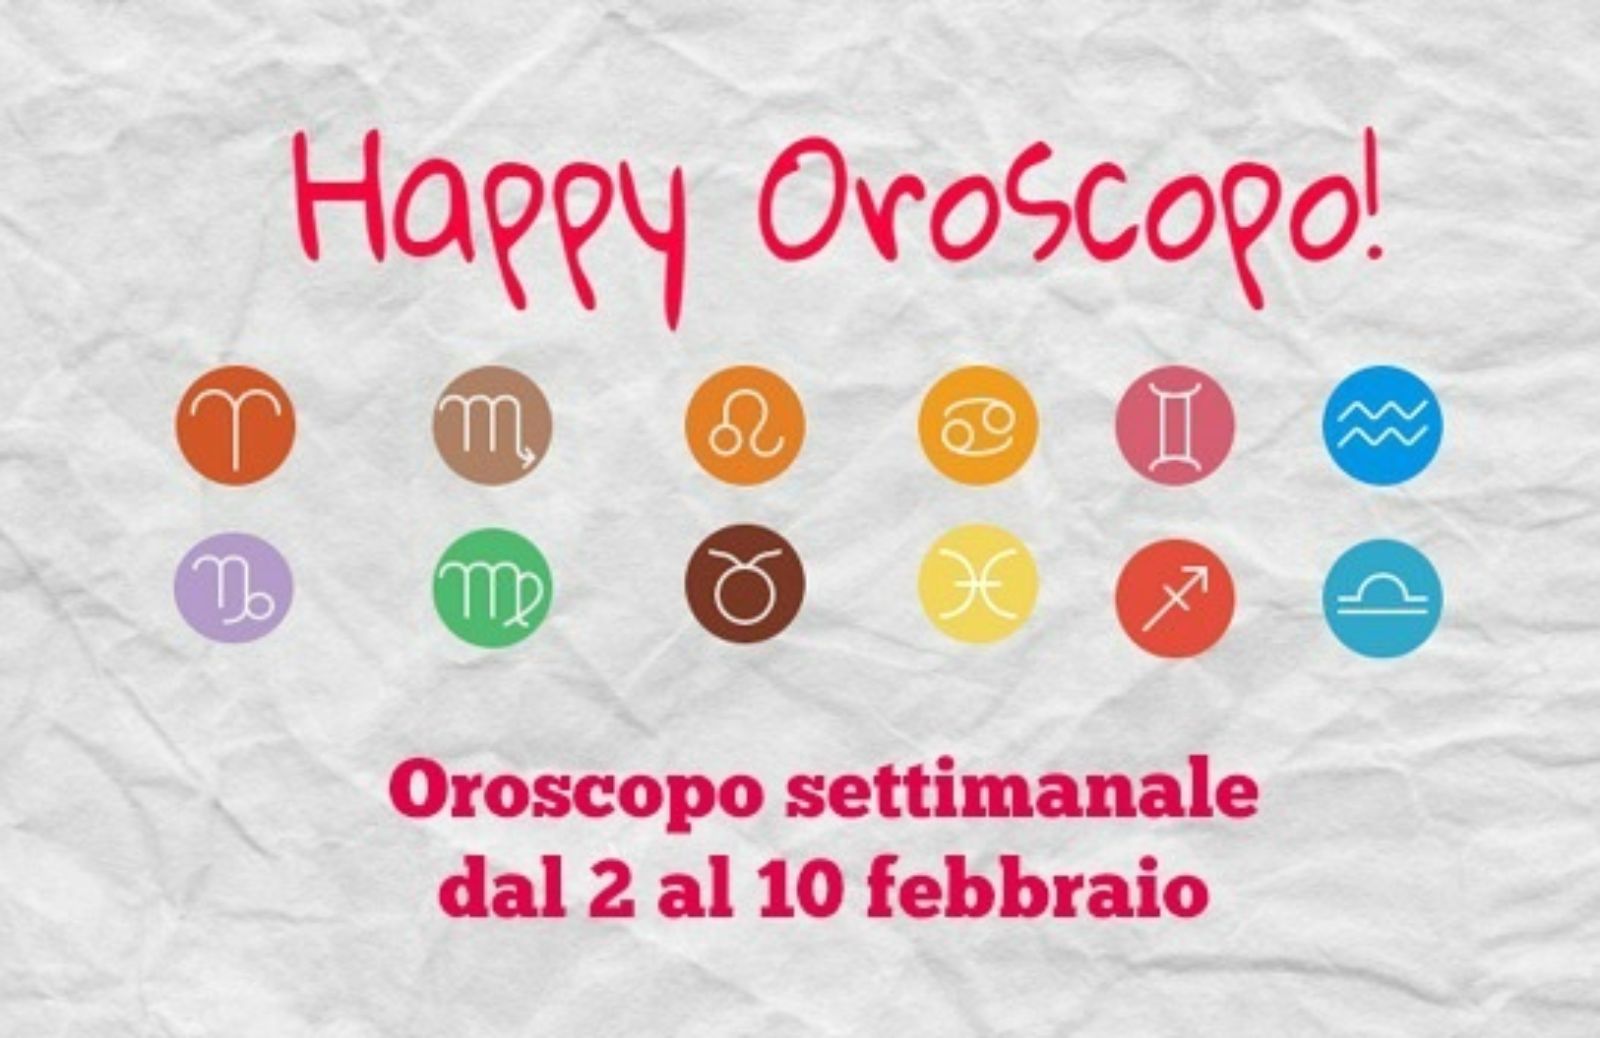 Happy Oroscopo della settimana: cosa dicono le stelle dal 2 al 10 febbraio segno per segno